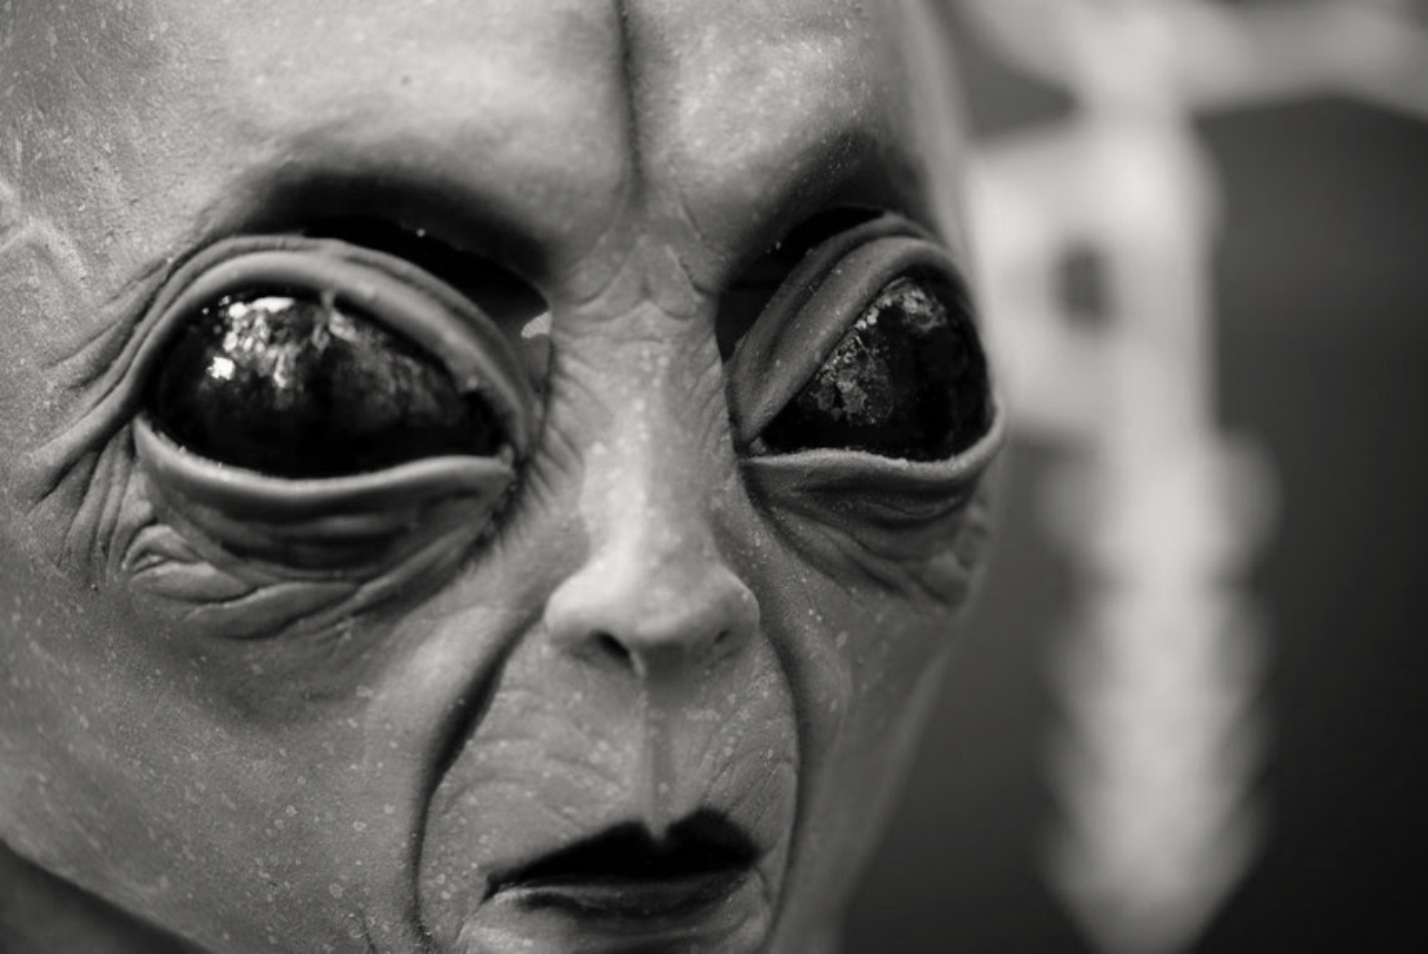 Projet Serpo : L'échange secret entre extraterrestres et humains 1